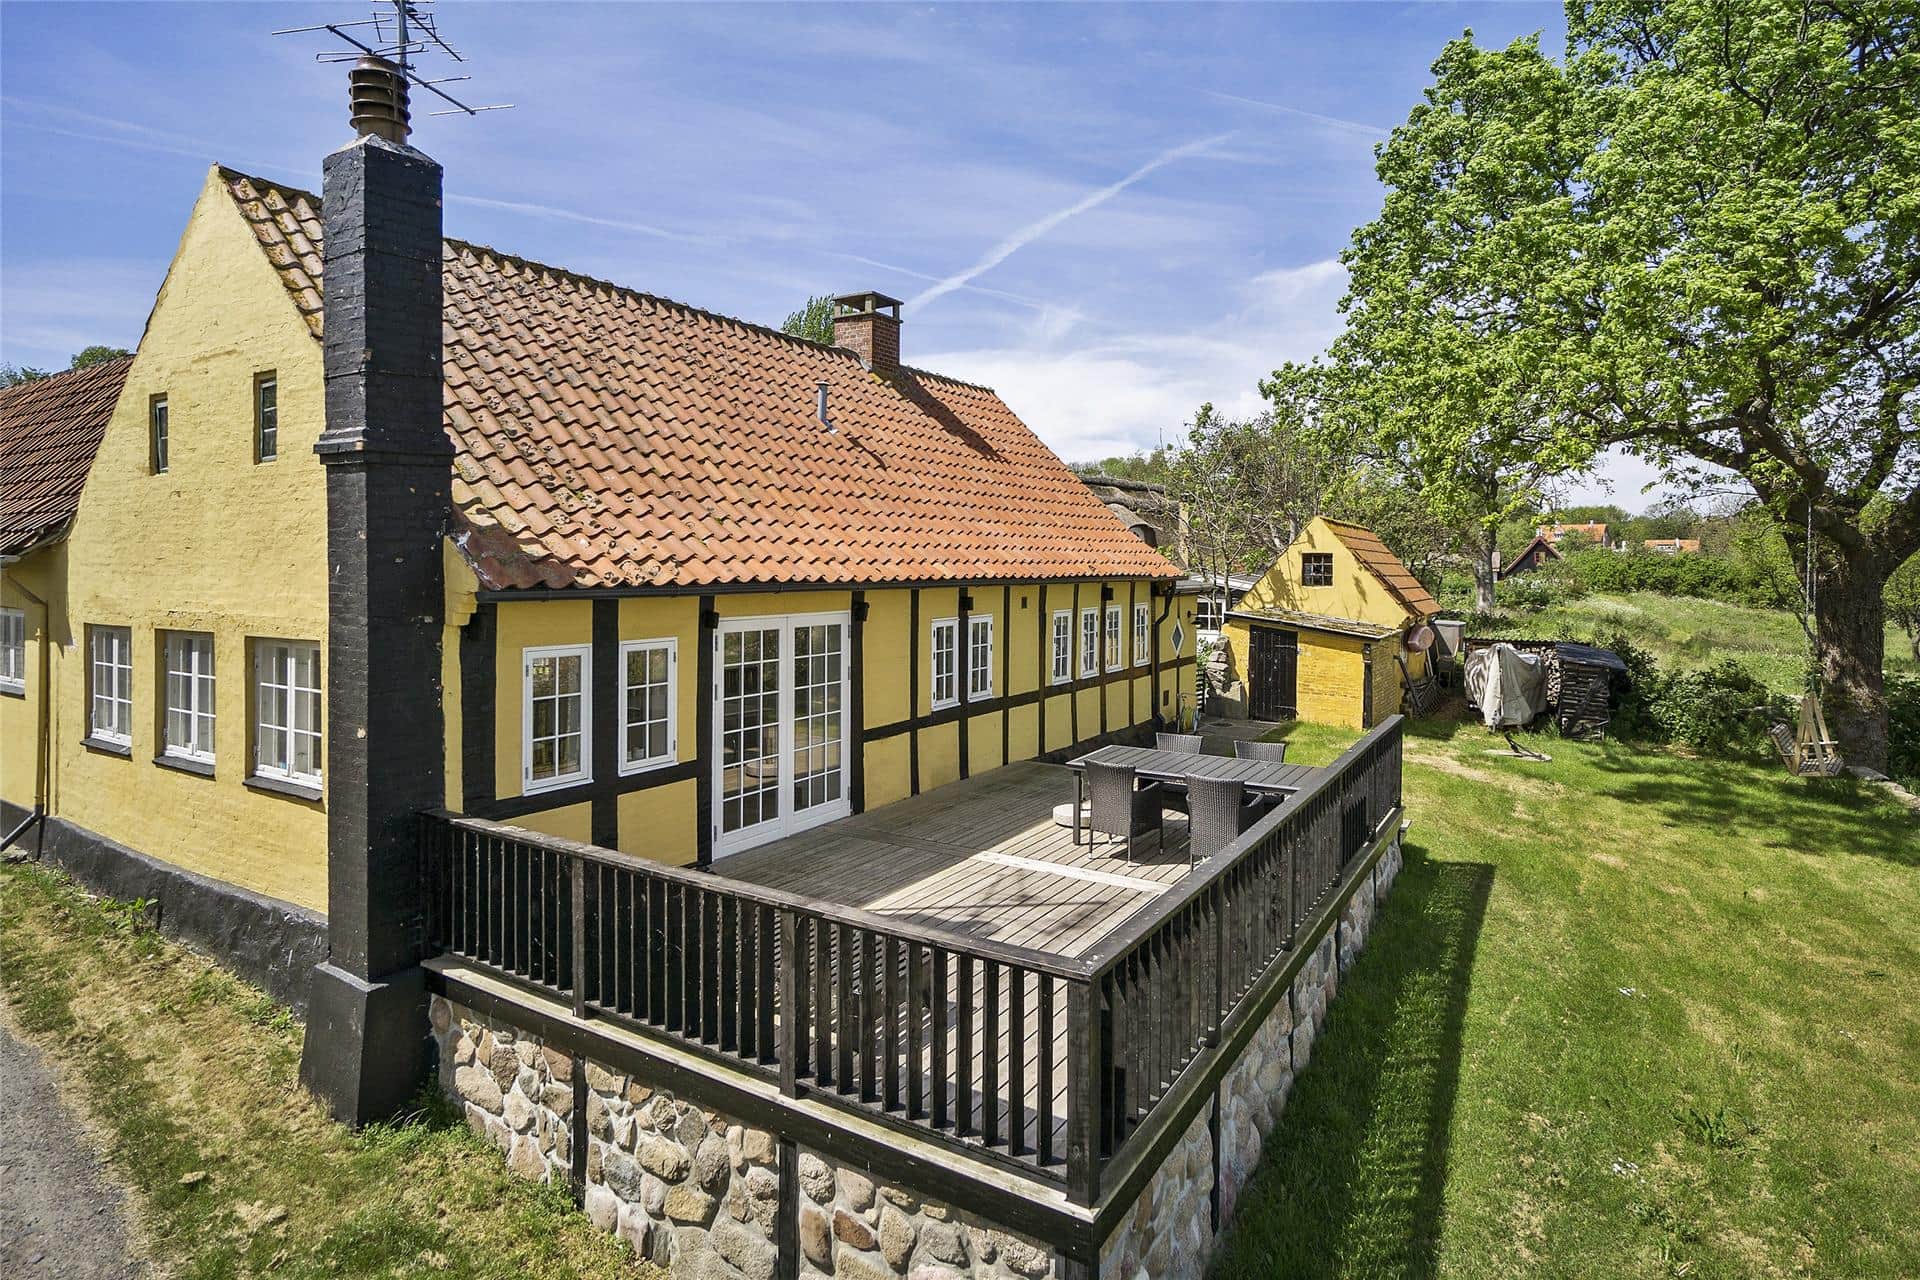 Image 1-10 Holiday-home 5525, Bølshavn 19, DK - 3740 Svaneke